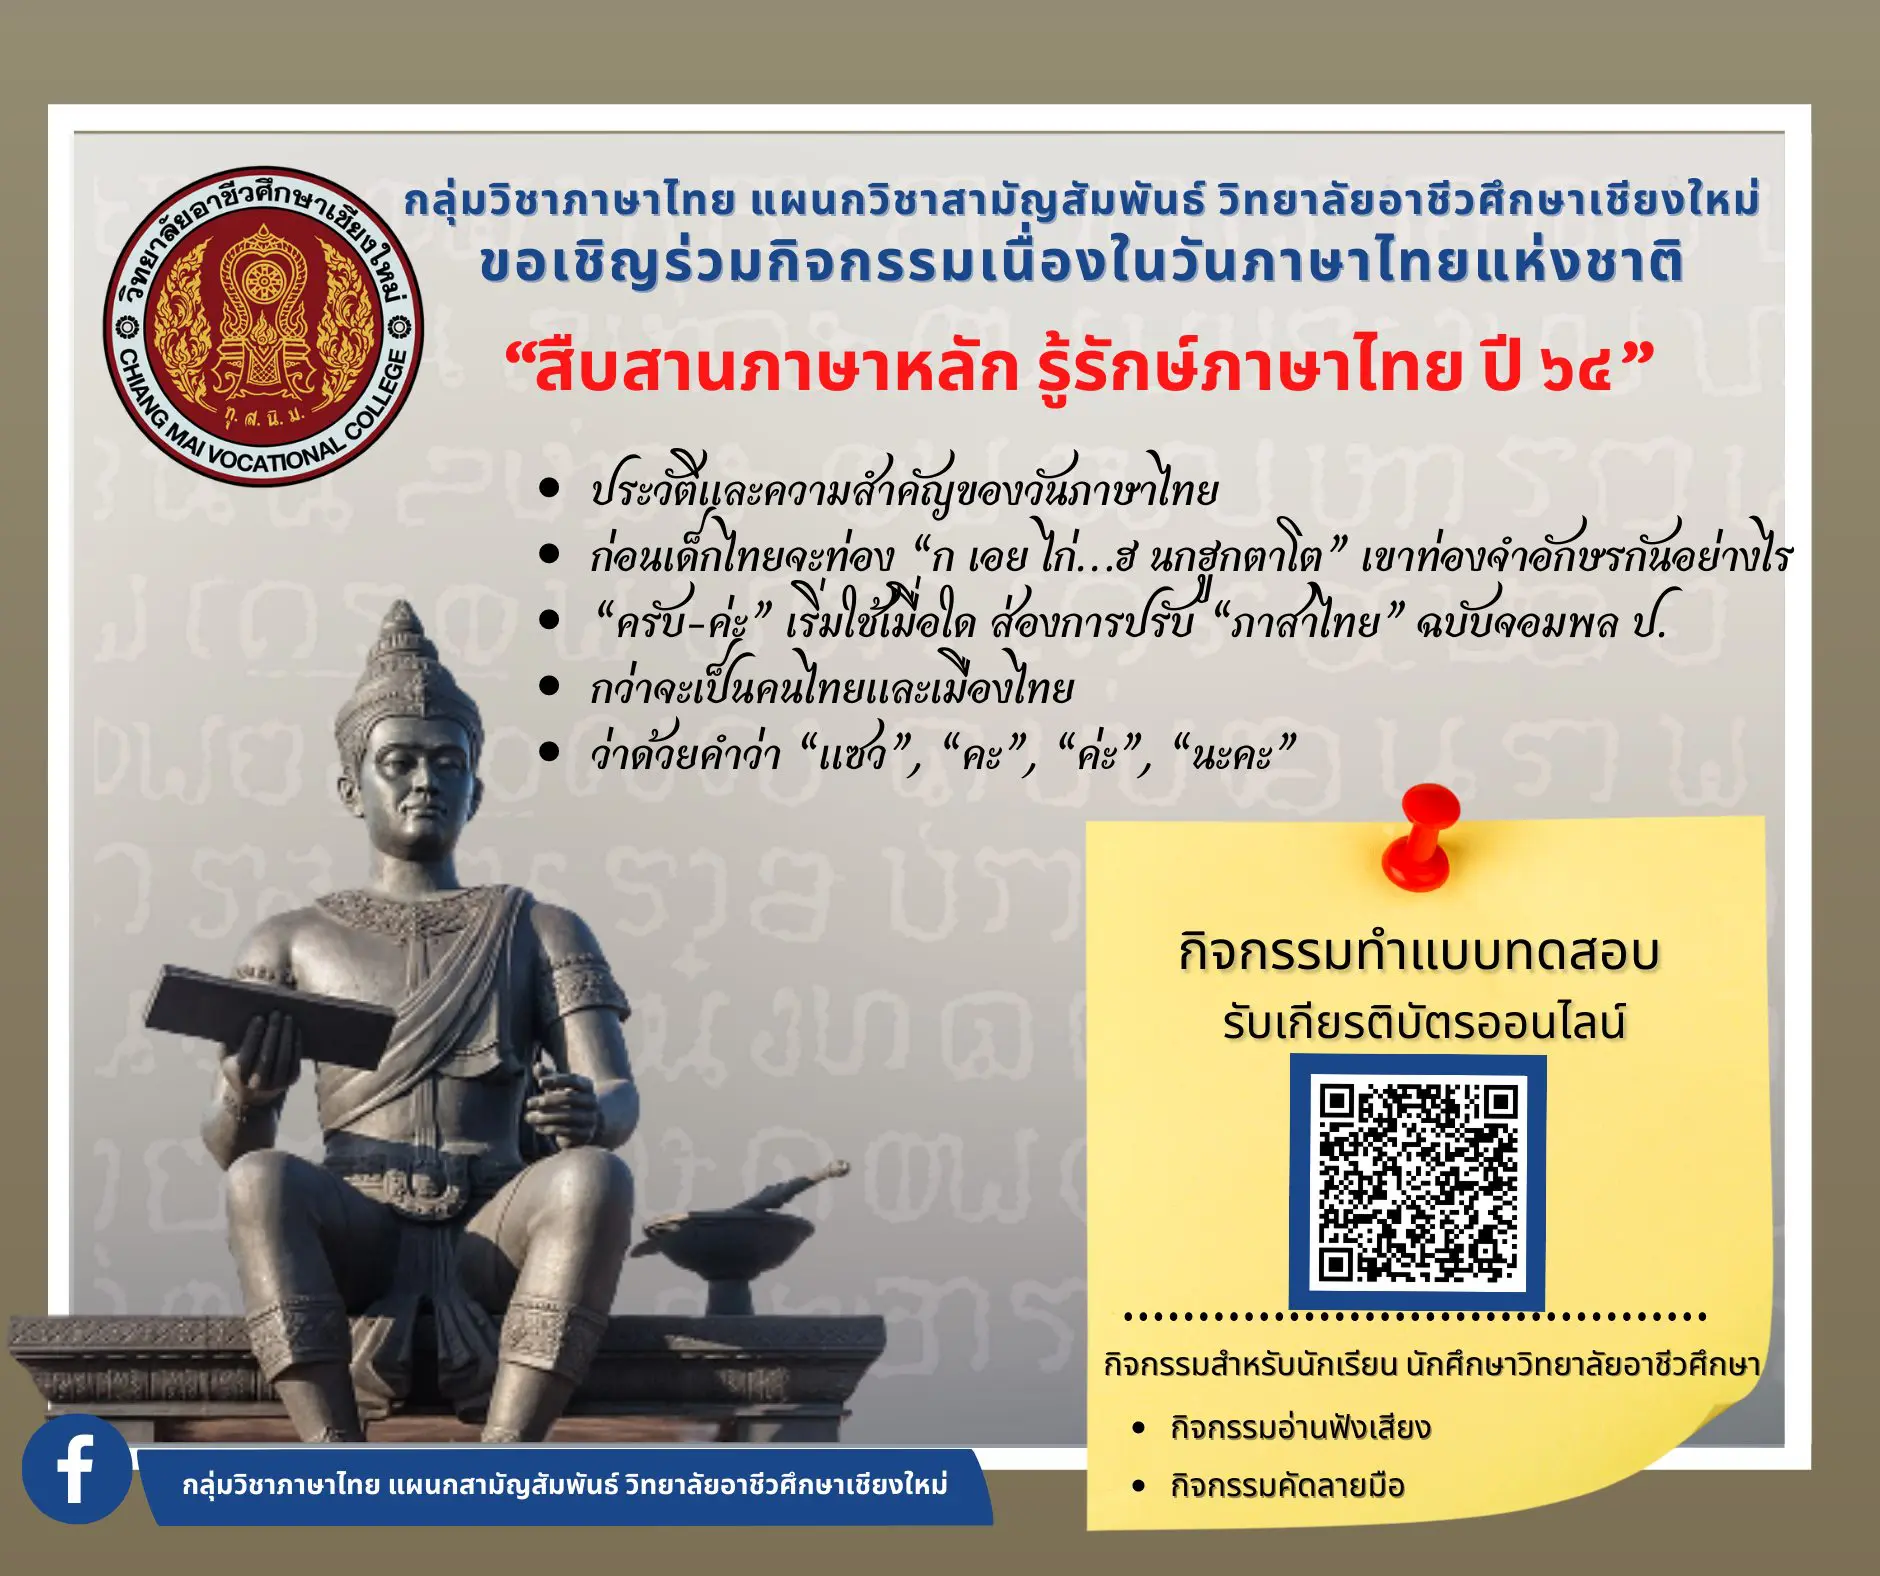 แบบทดสอบออนไลน์ กิจกรรม“สืบสานภาษาหลัก รู้รักษ์ภาษาไทย ปี 64” ผ่านเกณฑ์ร้อยละ 80 ขึ้นไป จะได้รับเกียรติบัตรออนไลน์ โดยกลุ่มวิชาภาษาไทย แผนกวิชาสามัญสัมพันธ์ วิทยาลัยอาชีวศึกษาเชียงใหม่